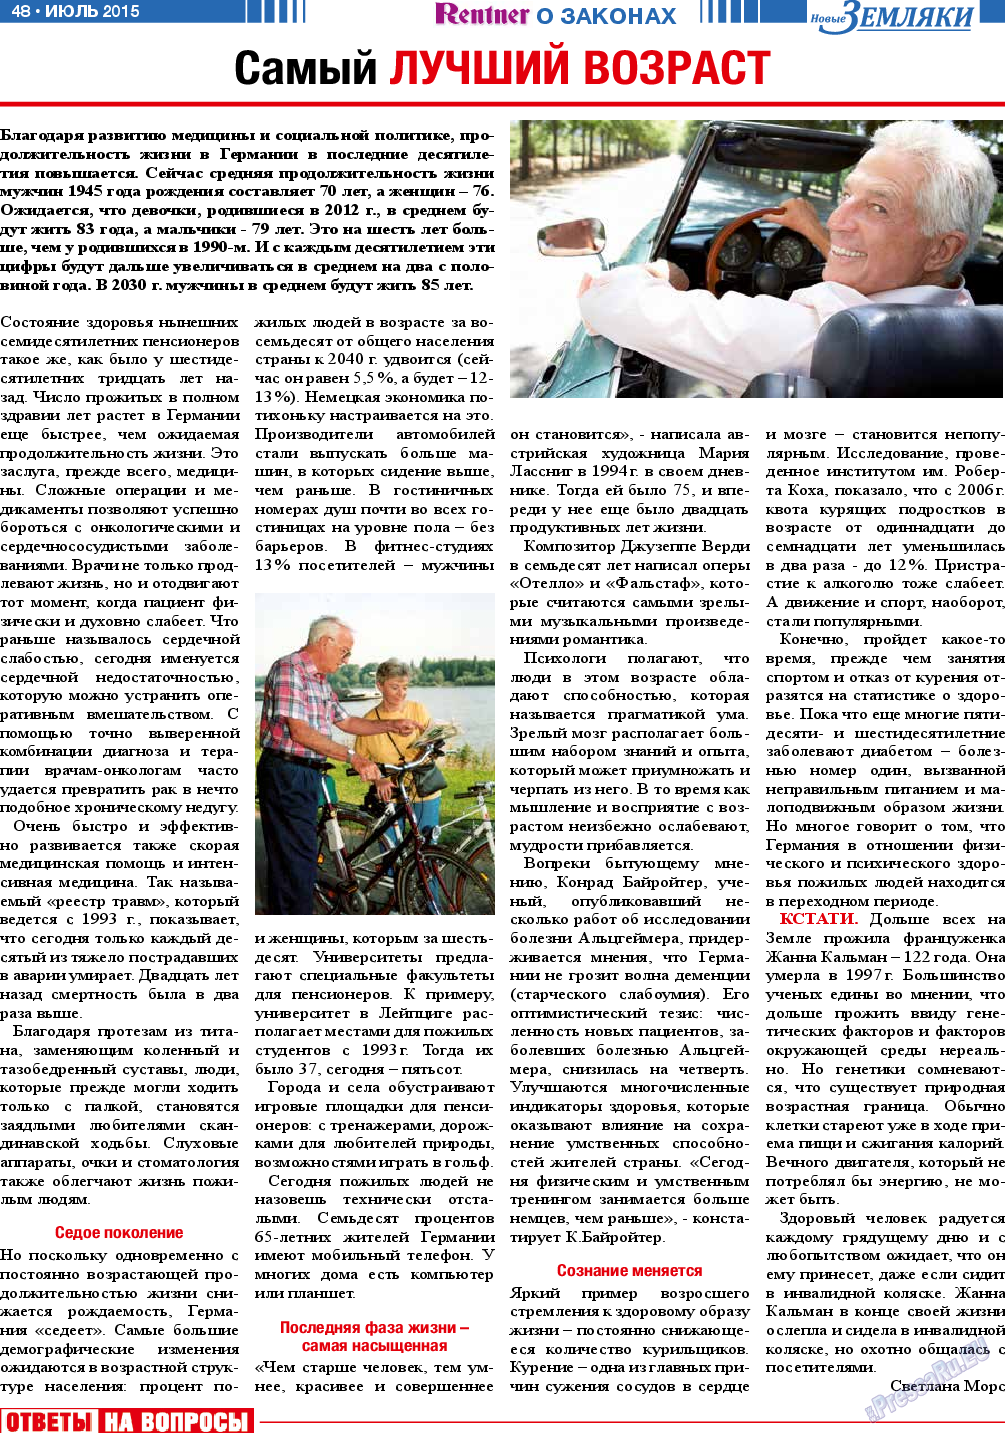 Новые Земляки, газета. 2015 №7 стр.48